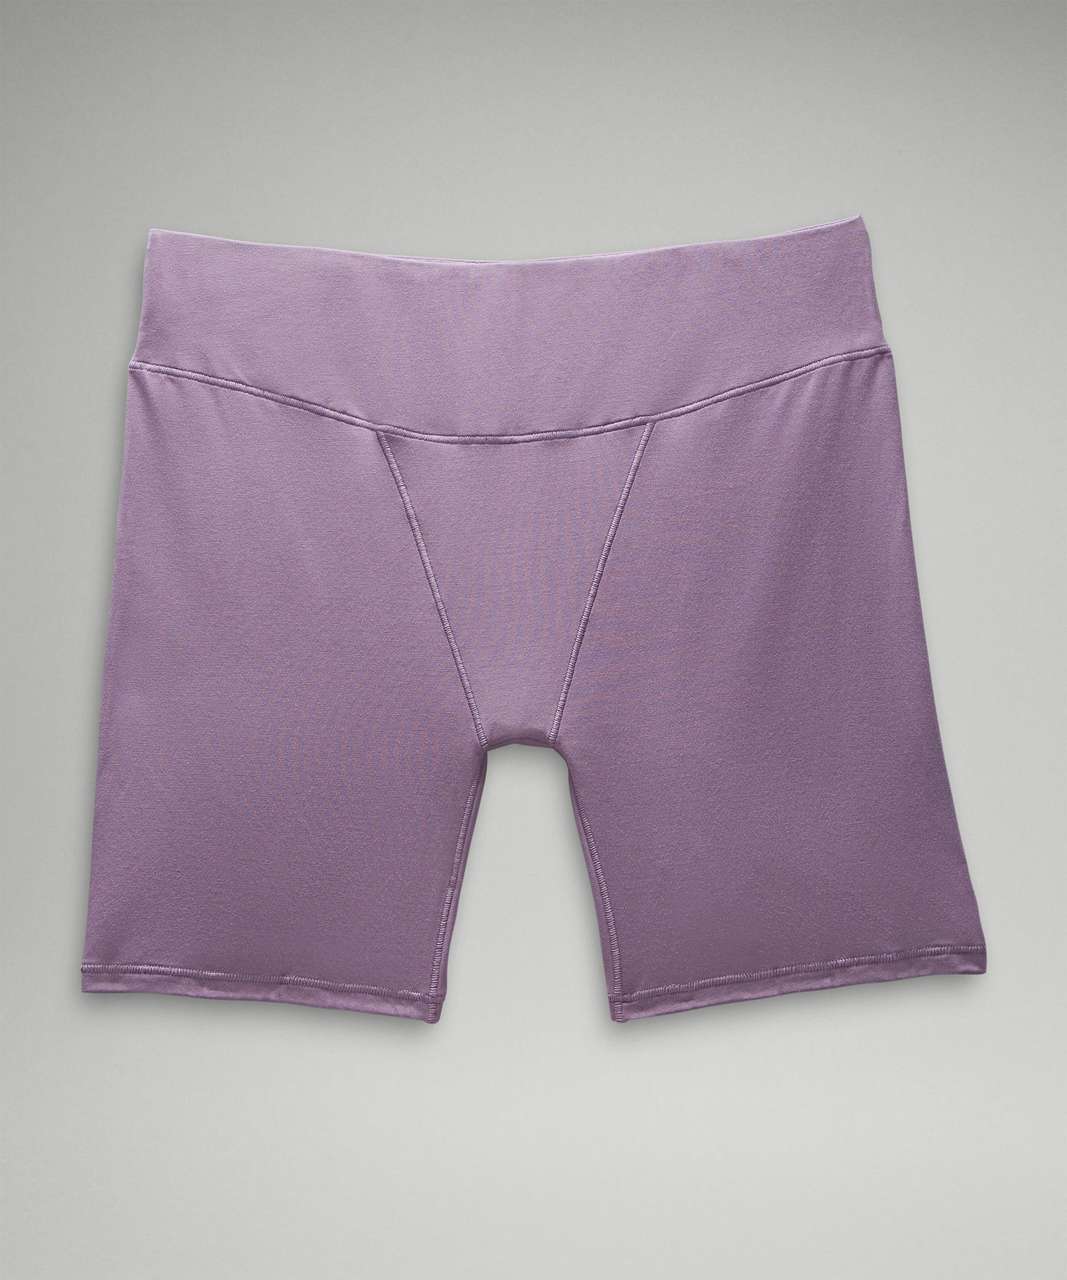 Lululemon UnderEase Super-High-Rise Shortie Underwear 5" - Purple Ash